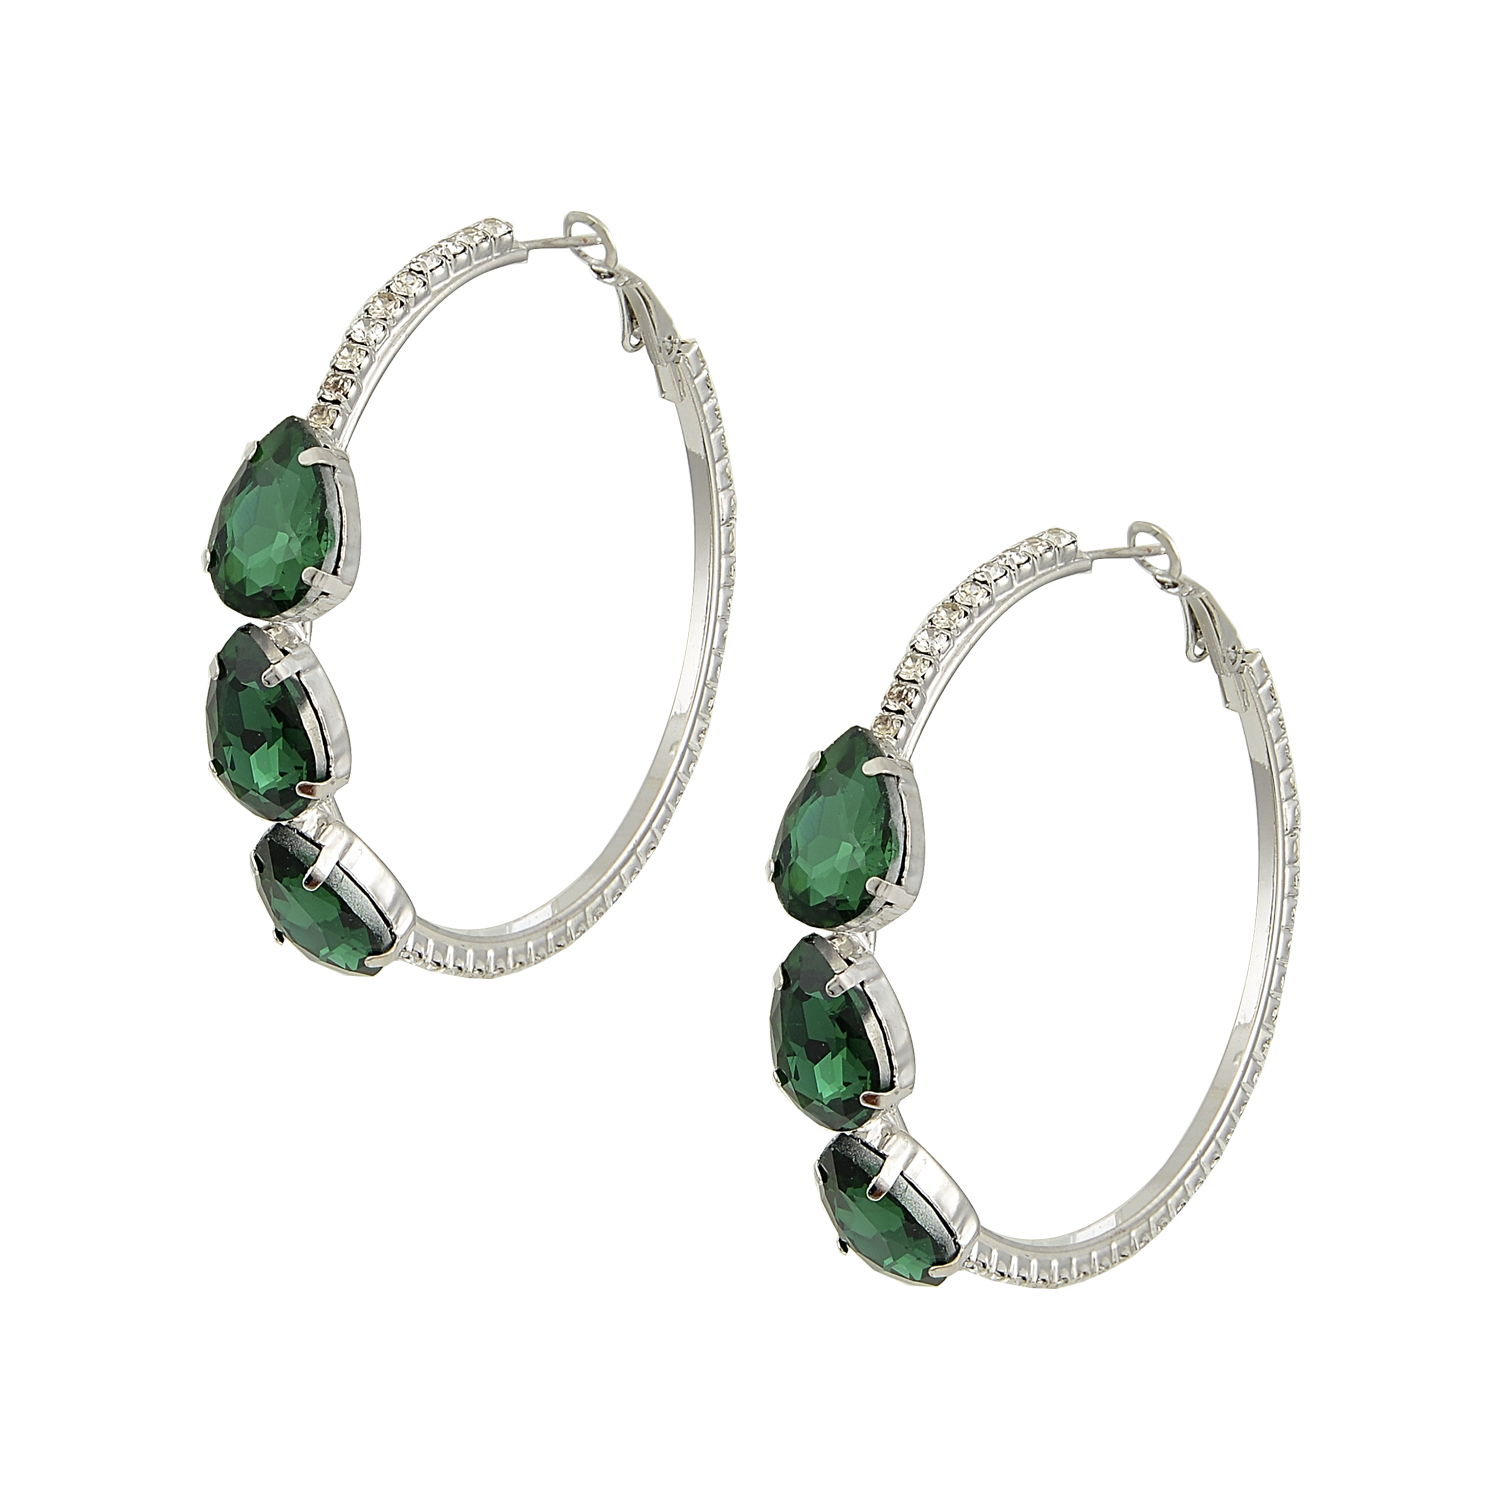 Emerald Seas Earrings